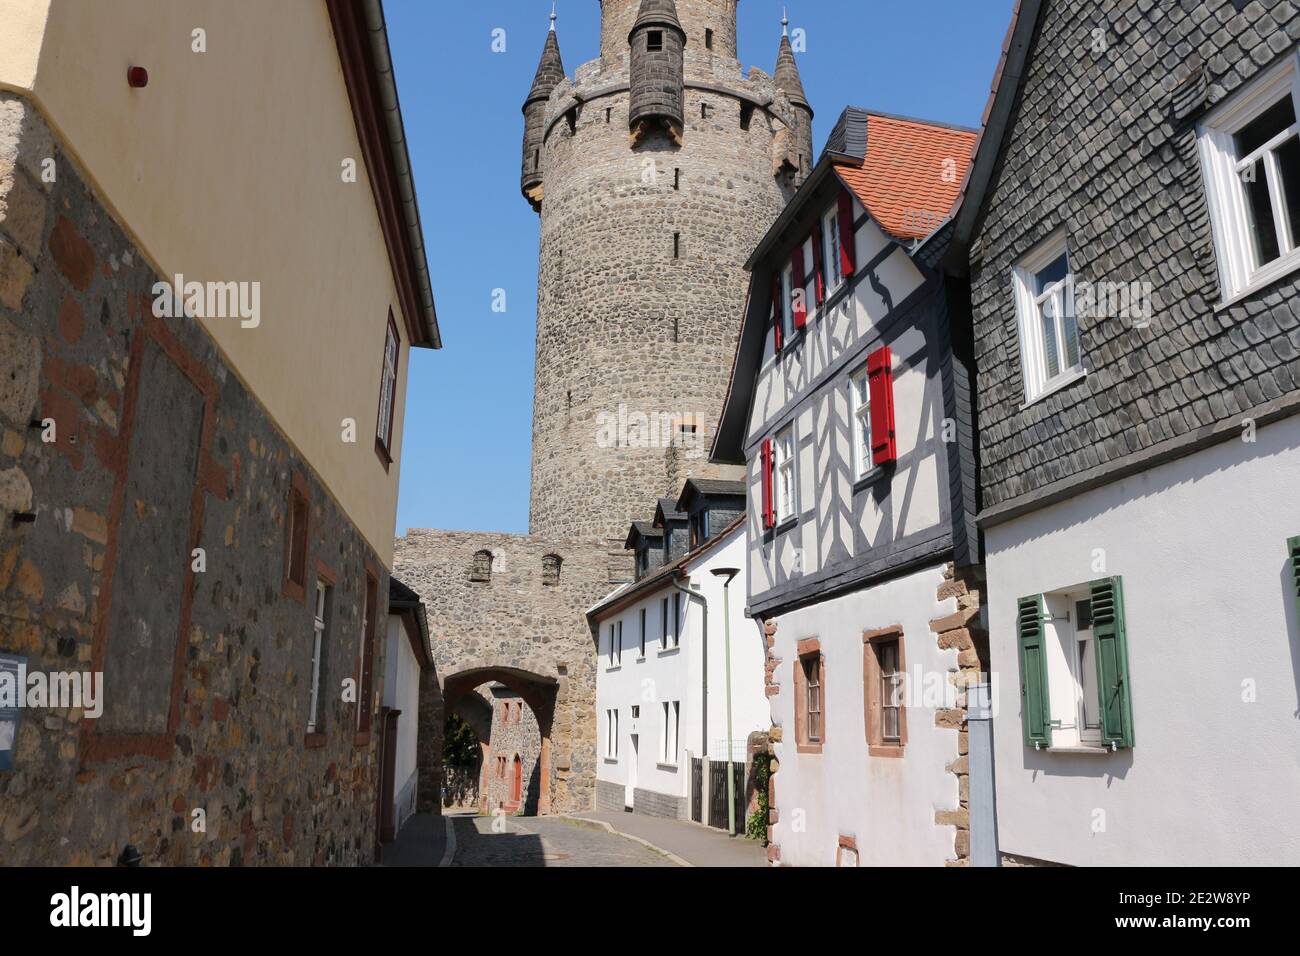 Impressionen aus Bad Homburg in Hessen Stock Photo